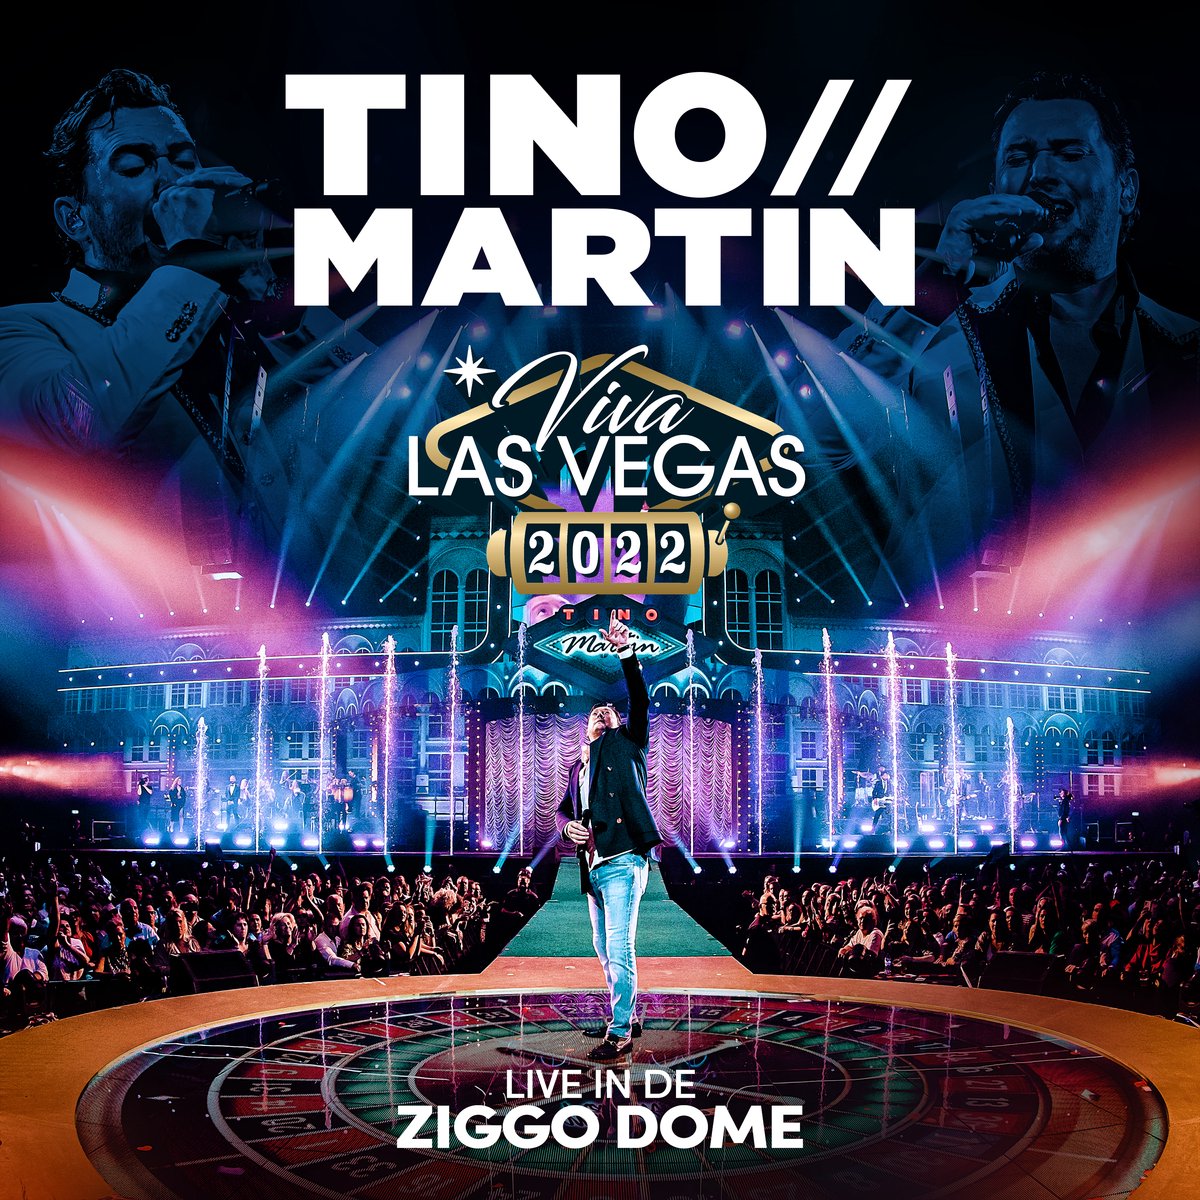 Martin, Tino Viva Las Vegas 2022